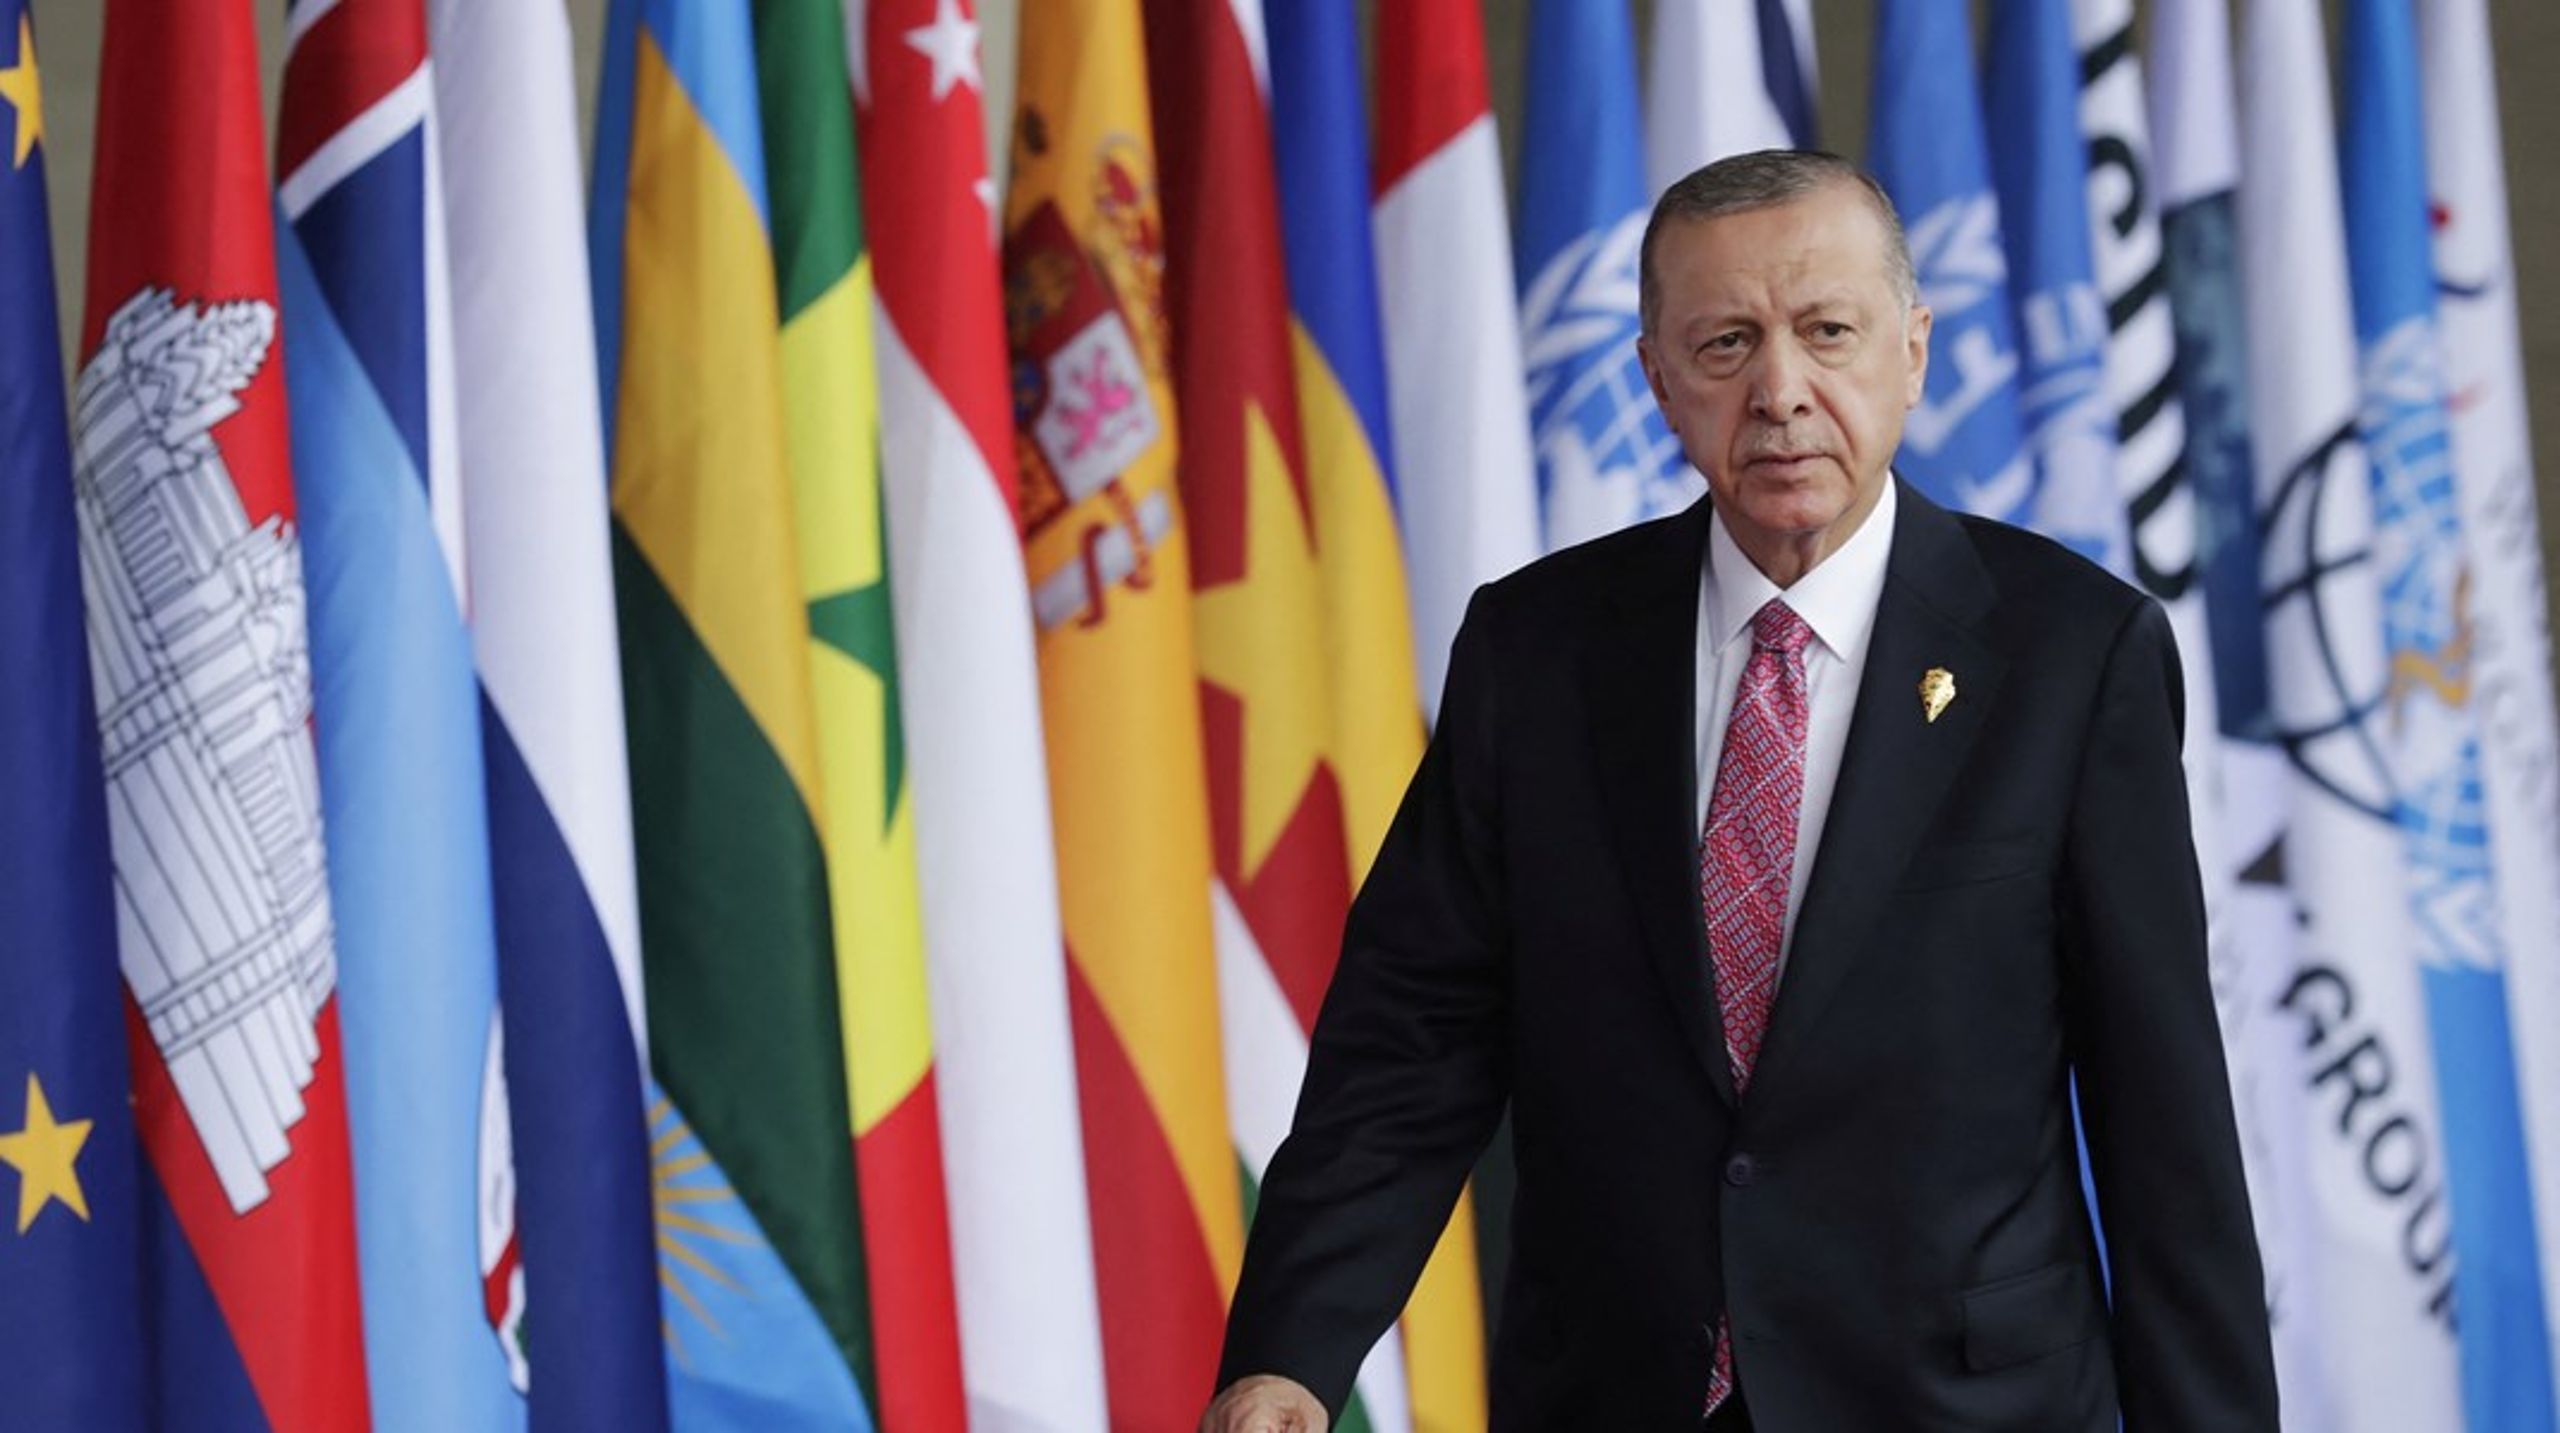 Erdogan har ført en hård kurs over for politiske modstandere og kritiske medier, siden han afværgede et&nbsp;militærkup i 2016. Den demokratiske krise i Tyrkiet har ført til bekymring blandt vestlige statsledere.